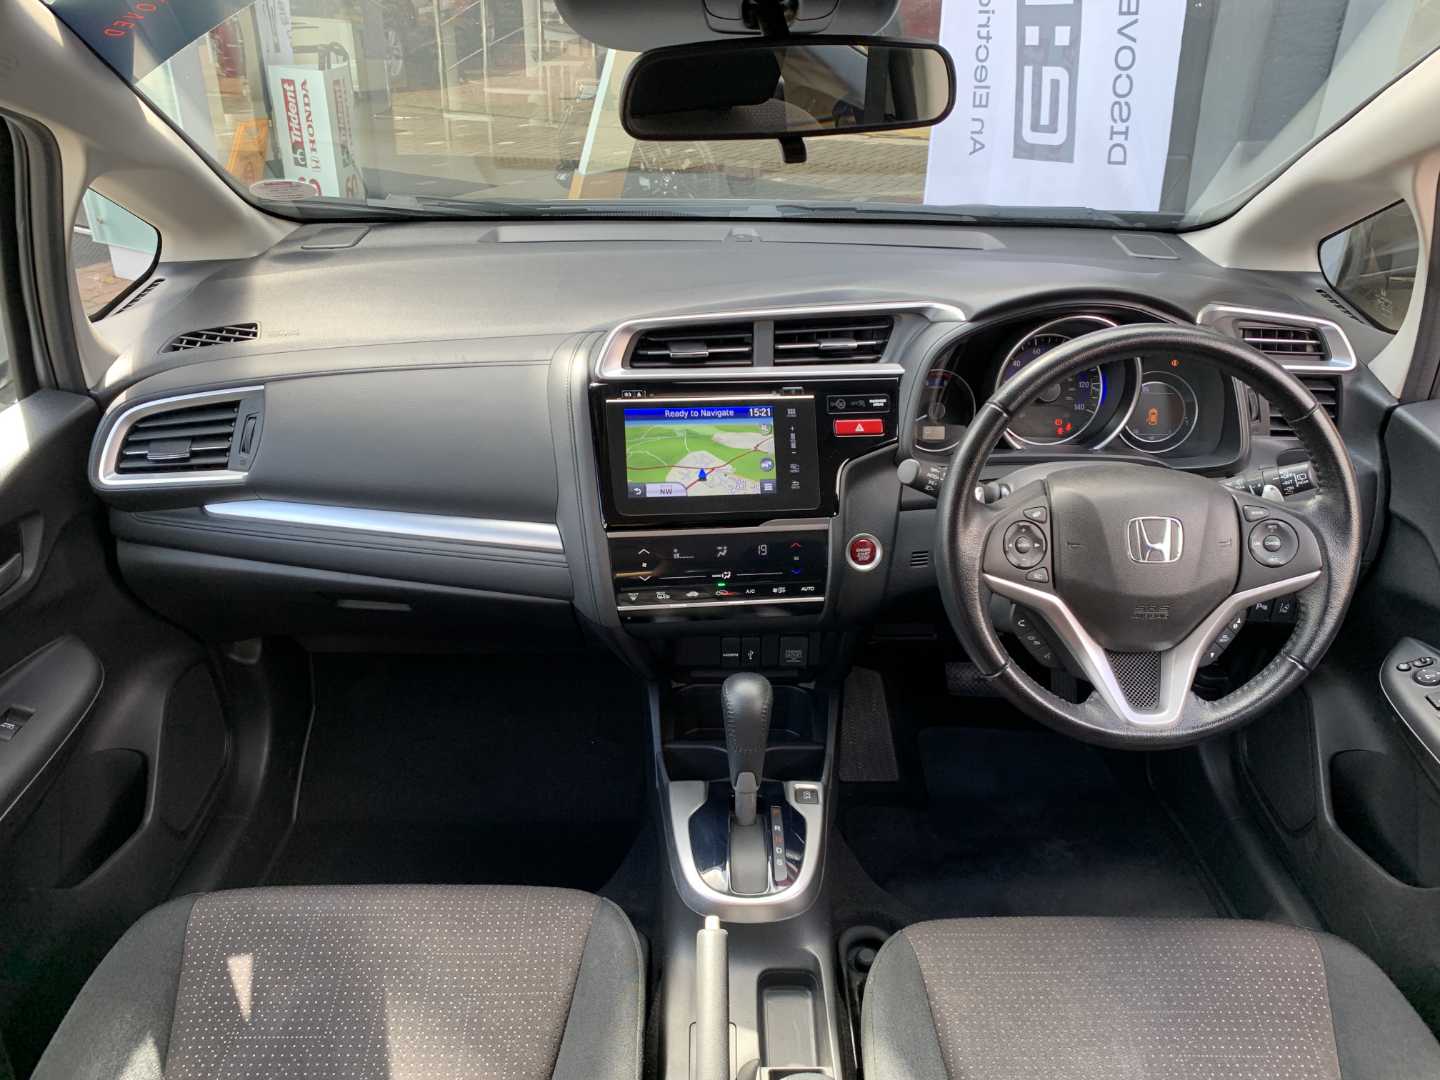 Honda JAZZ 1.3 EX Navi 5dr CVT - Image 4